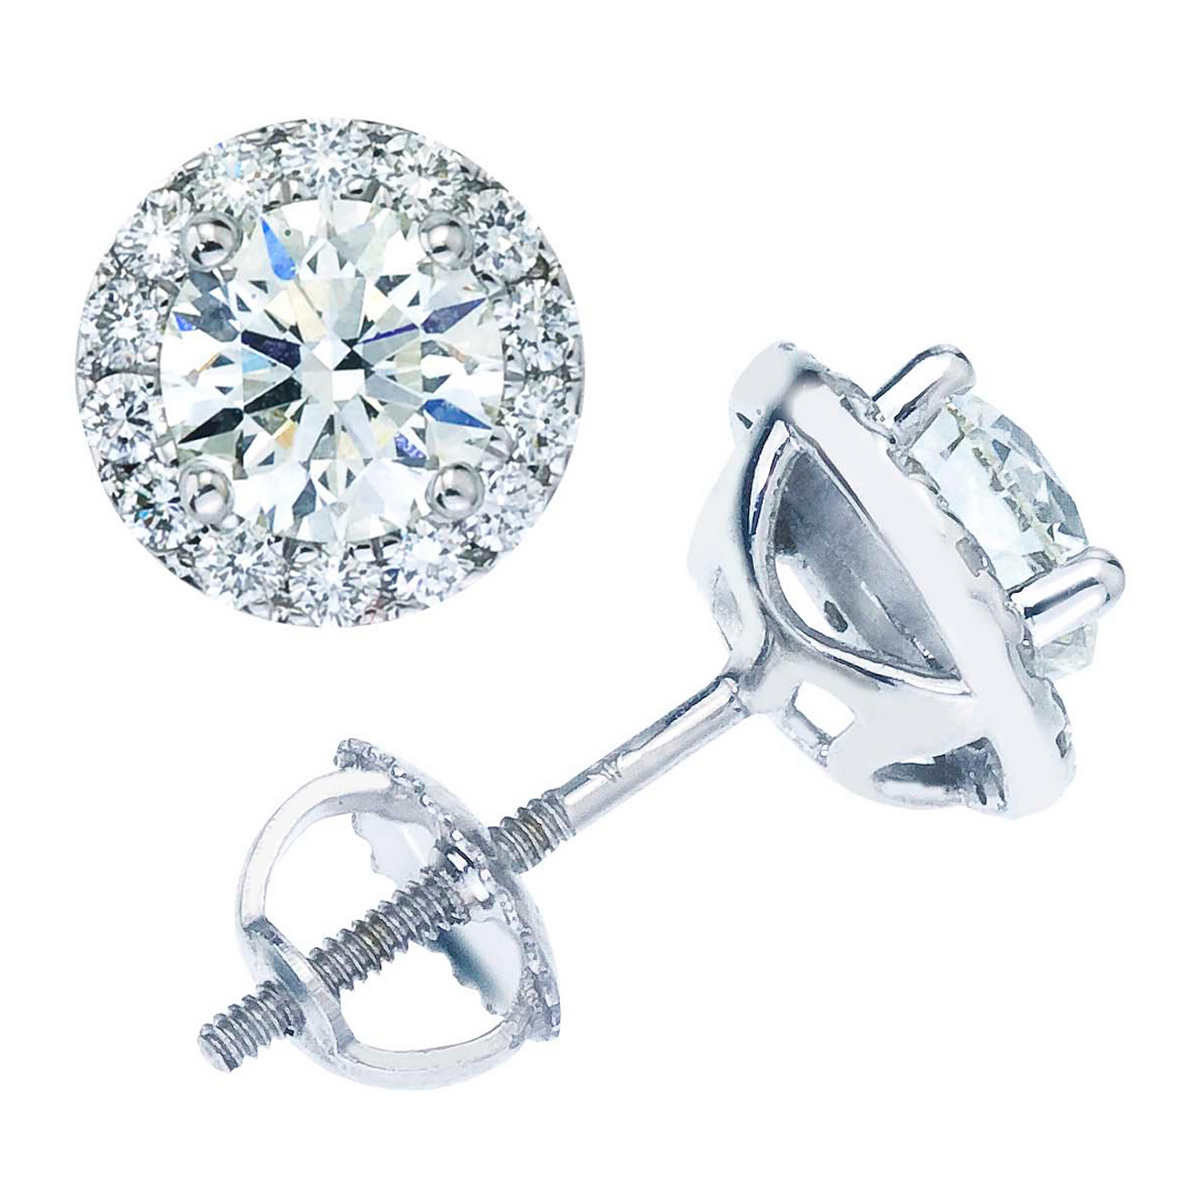 Diamond Earrings Studs Costco
 diamond earrings